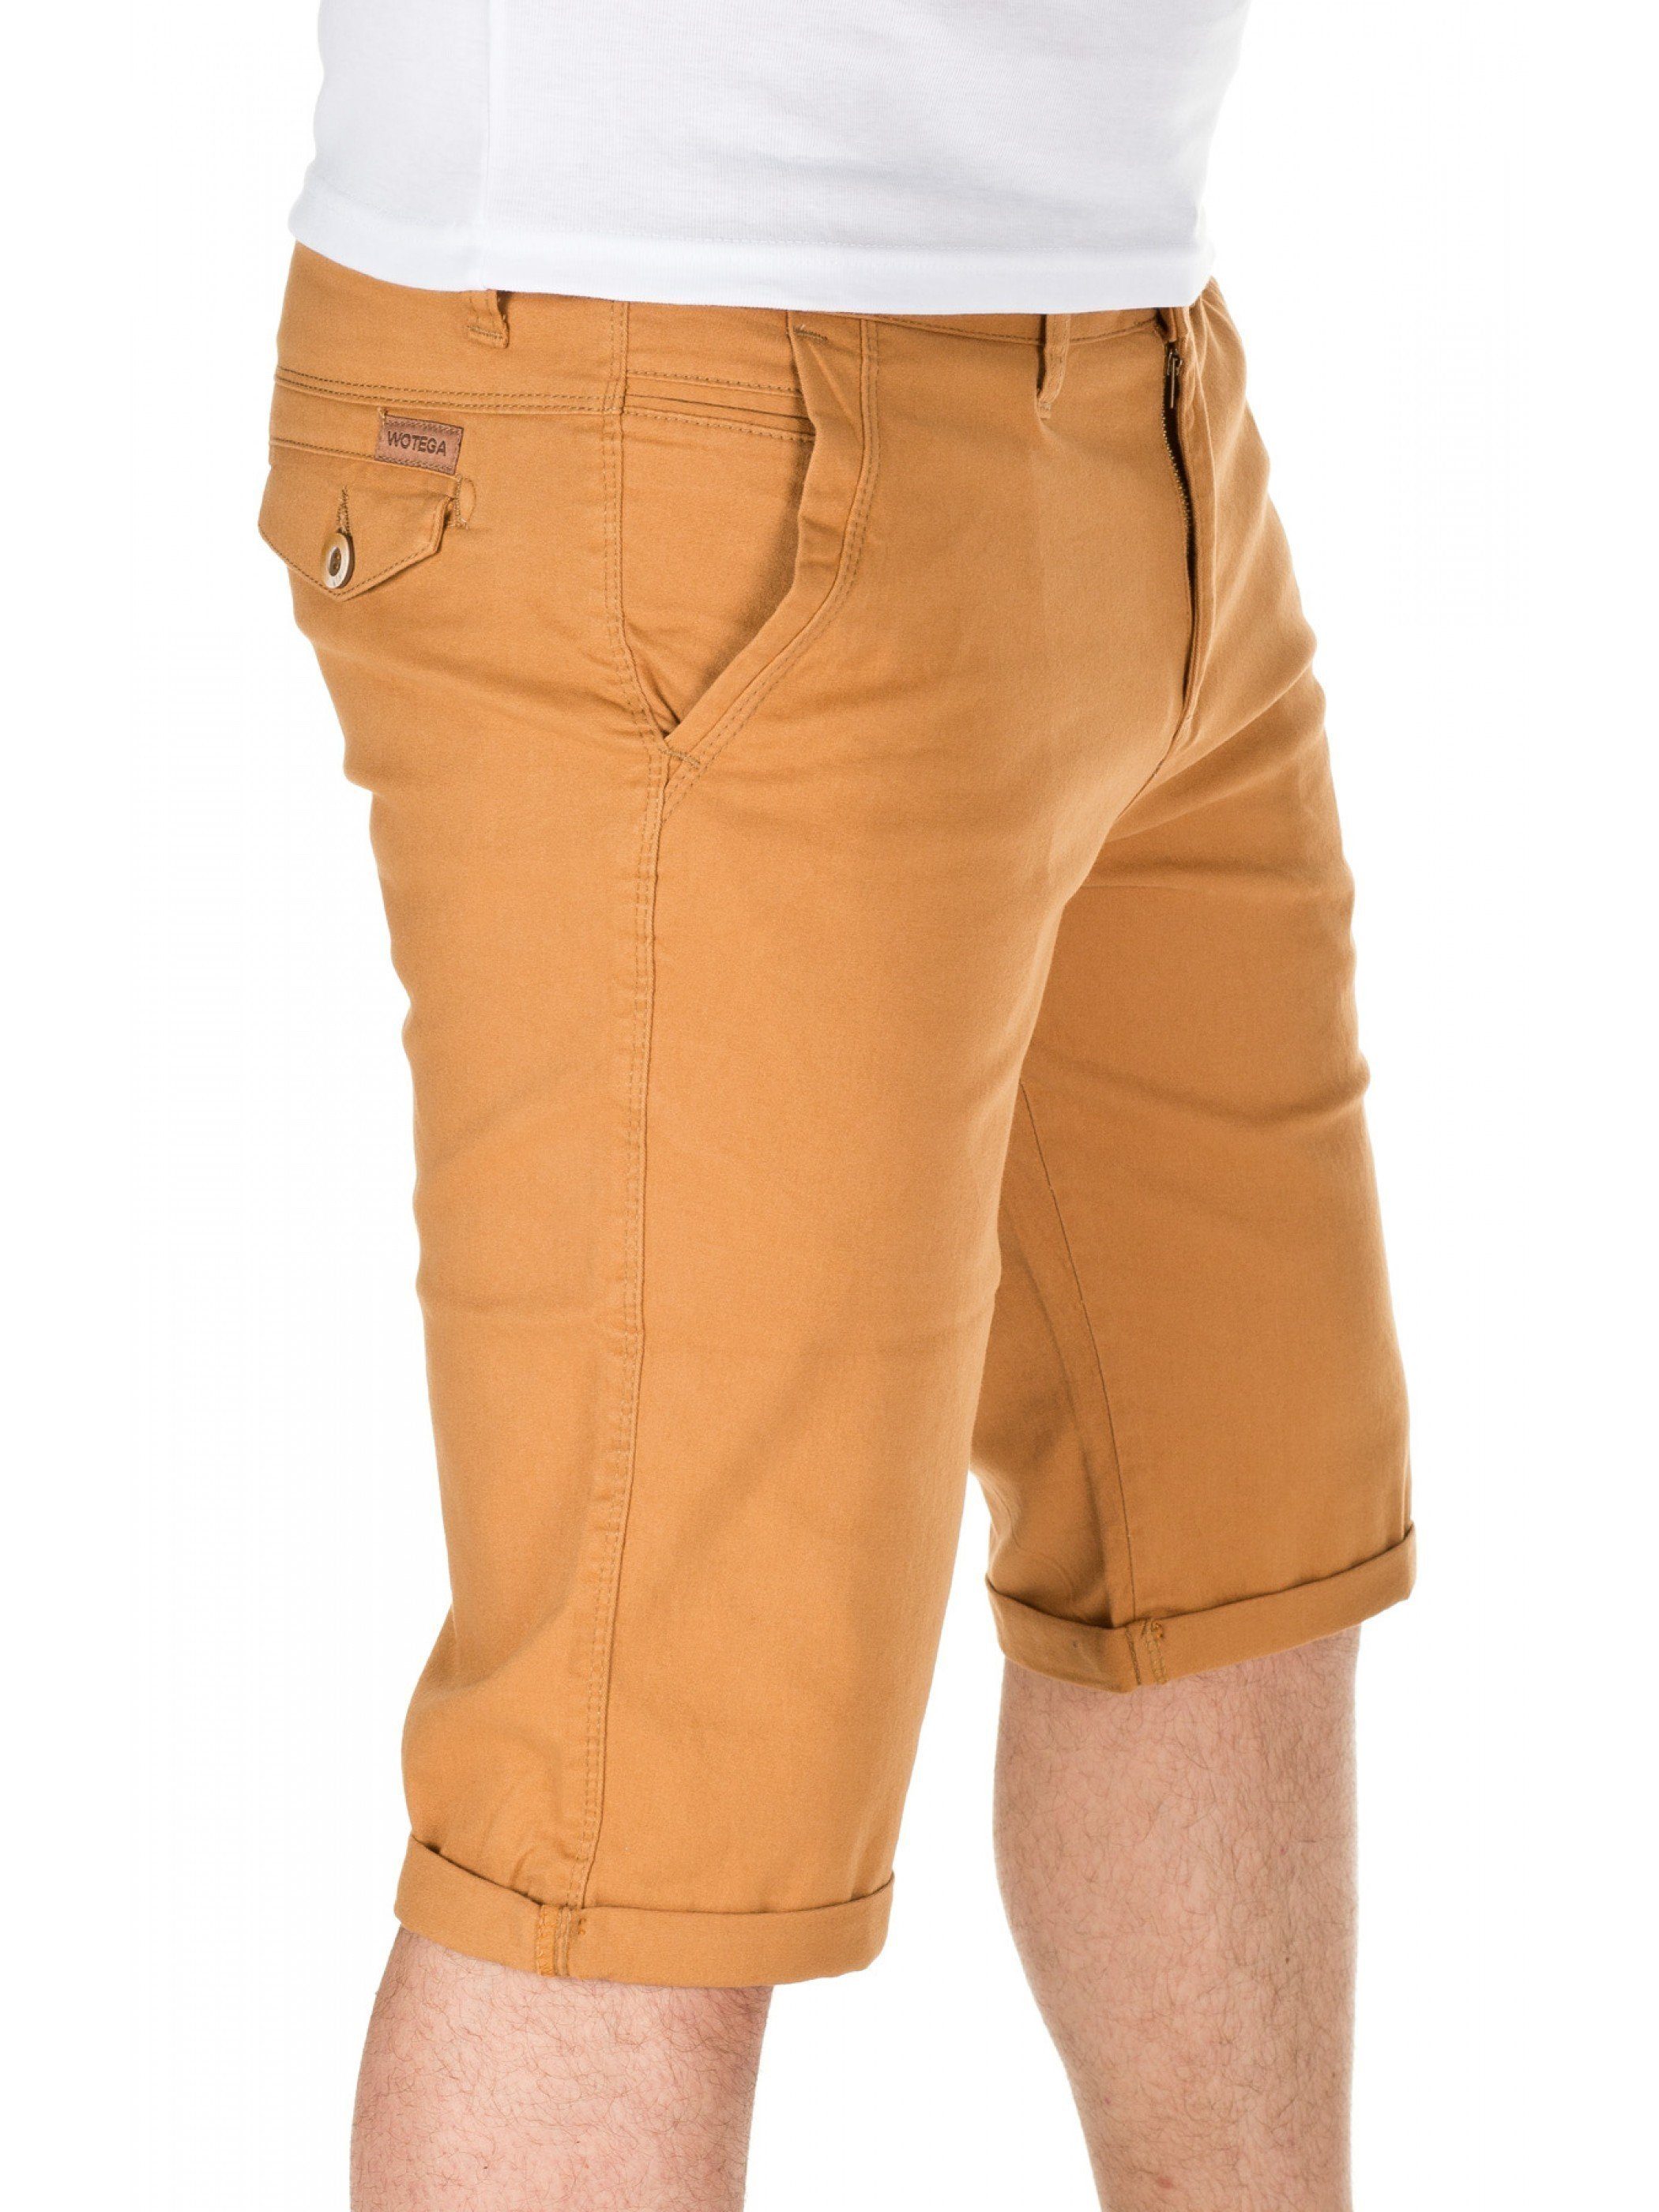 WOTEGA Shorts WOTEGA - Chino Goldfarben shorts 82295) Alex (mustard gold Unifarbe in